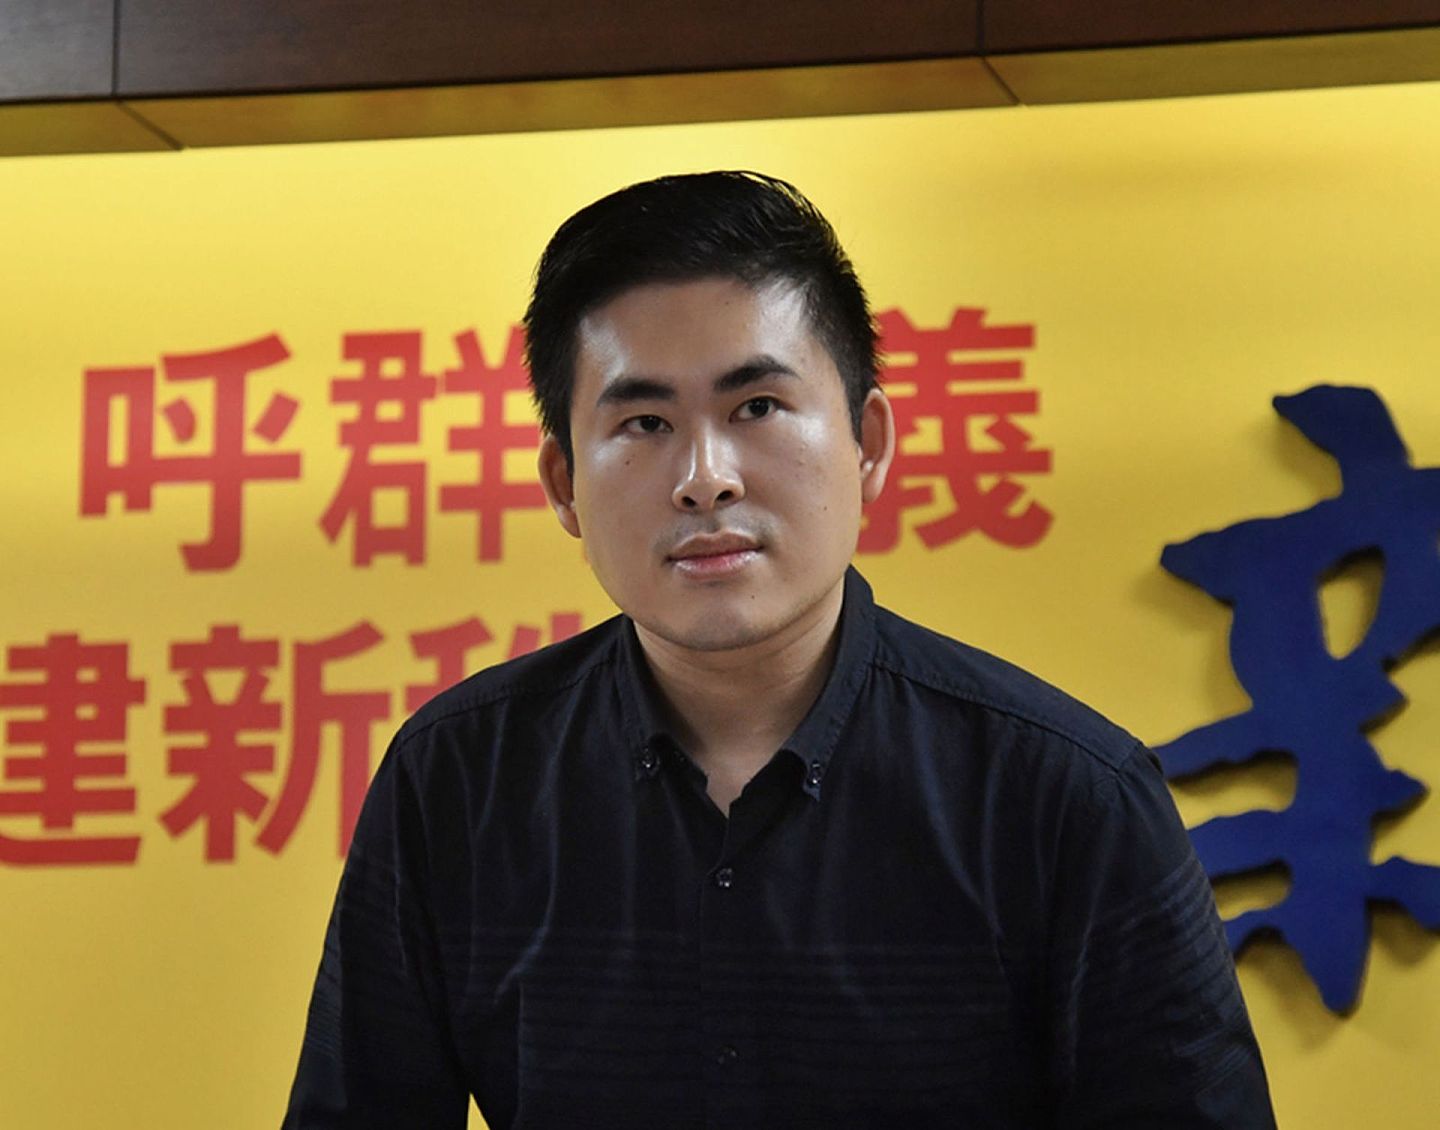 新党党工王炳忠被指为“疑似共谍”，起诉至今历时已逾2年仍未一审宣判。（中央社）